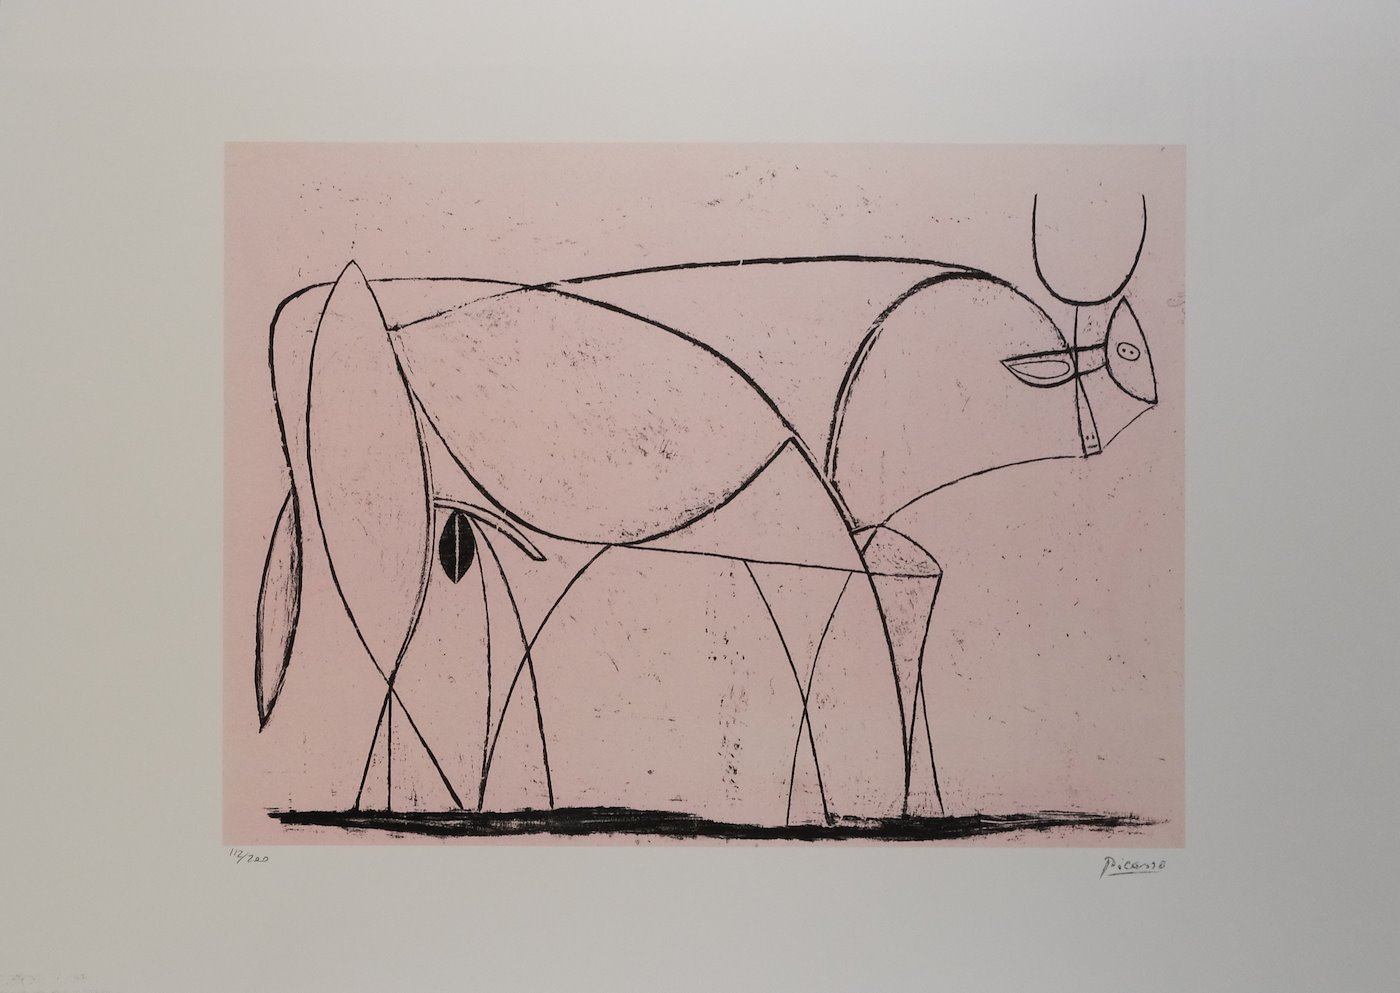 Pablo Picasso - Bull